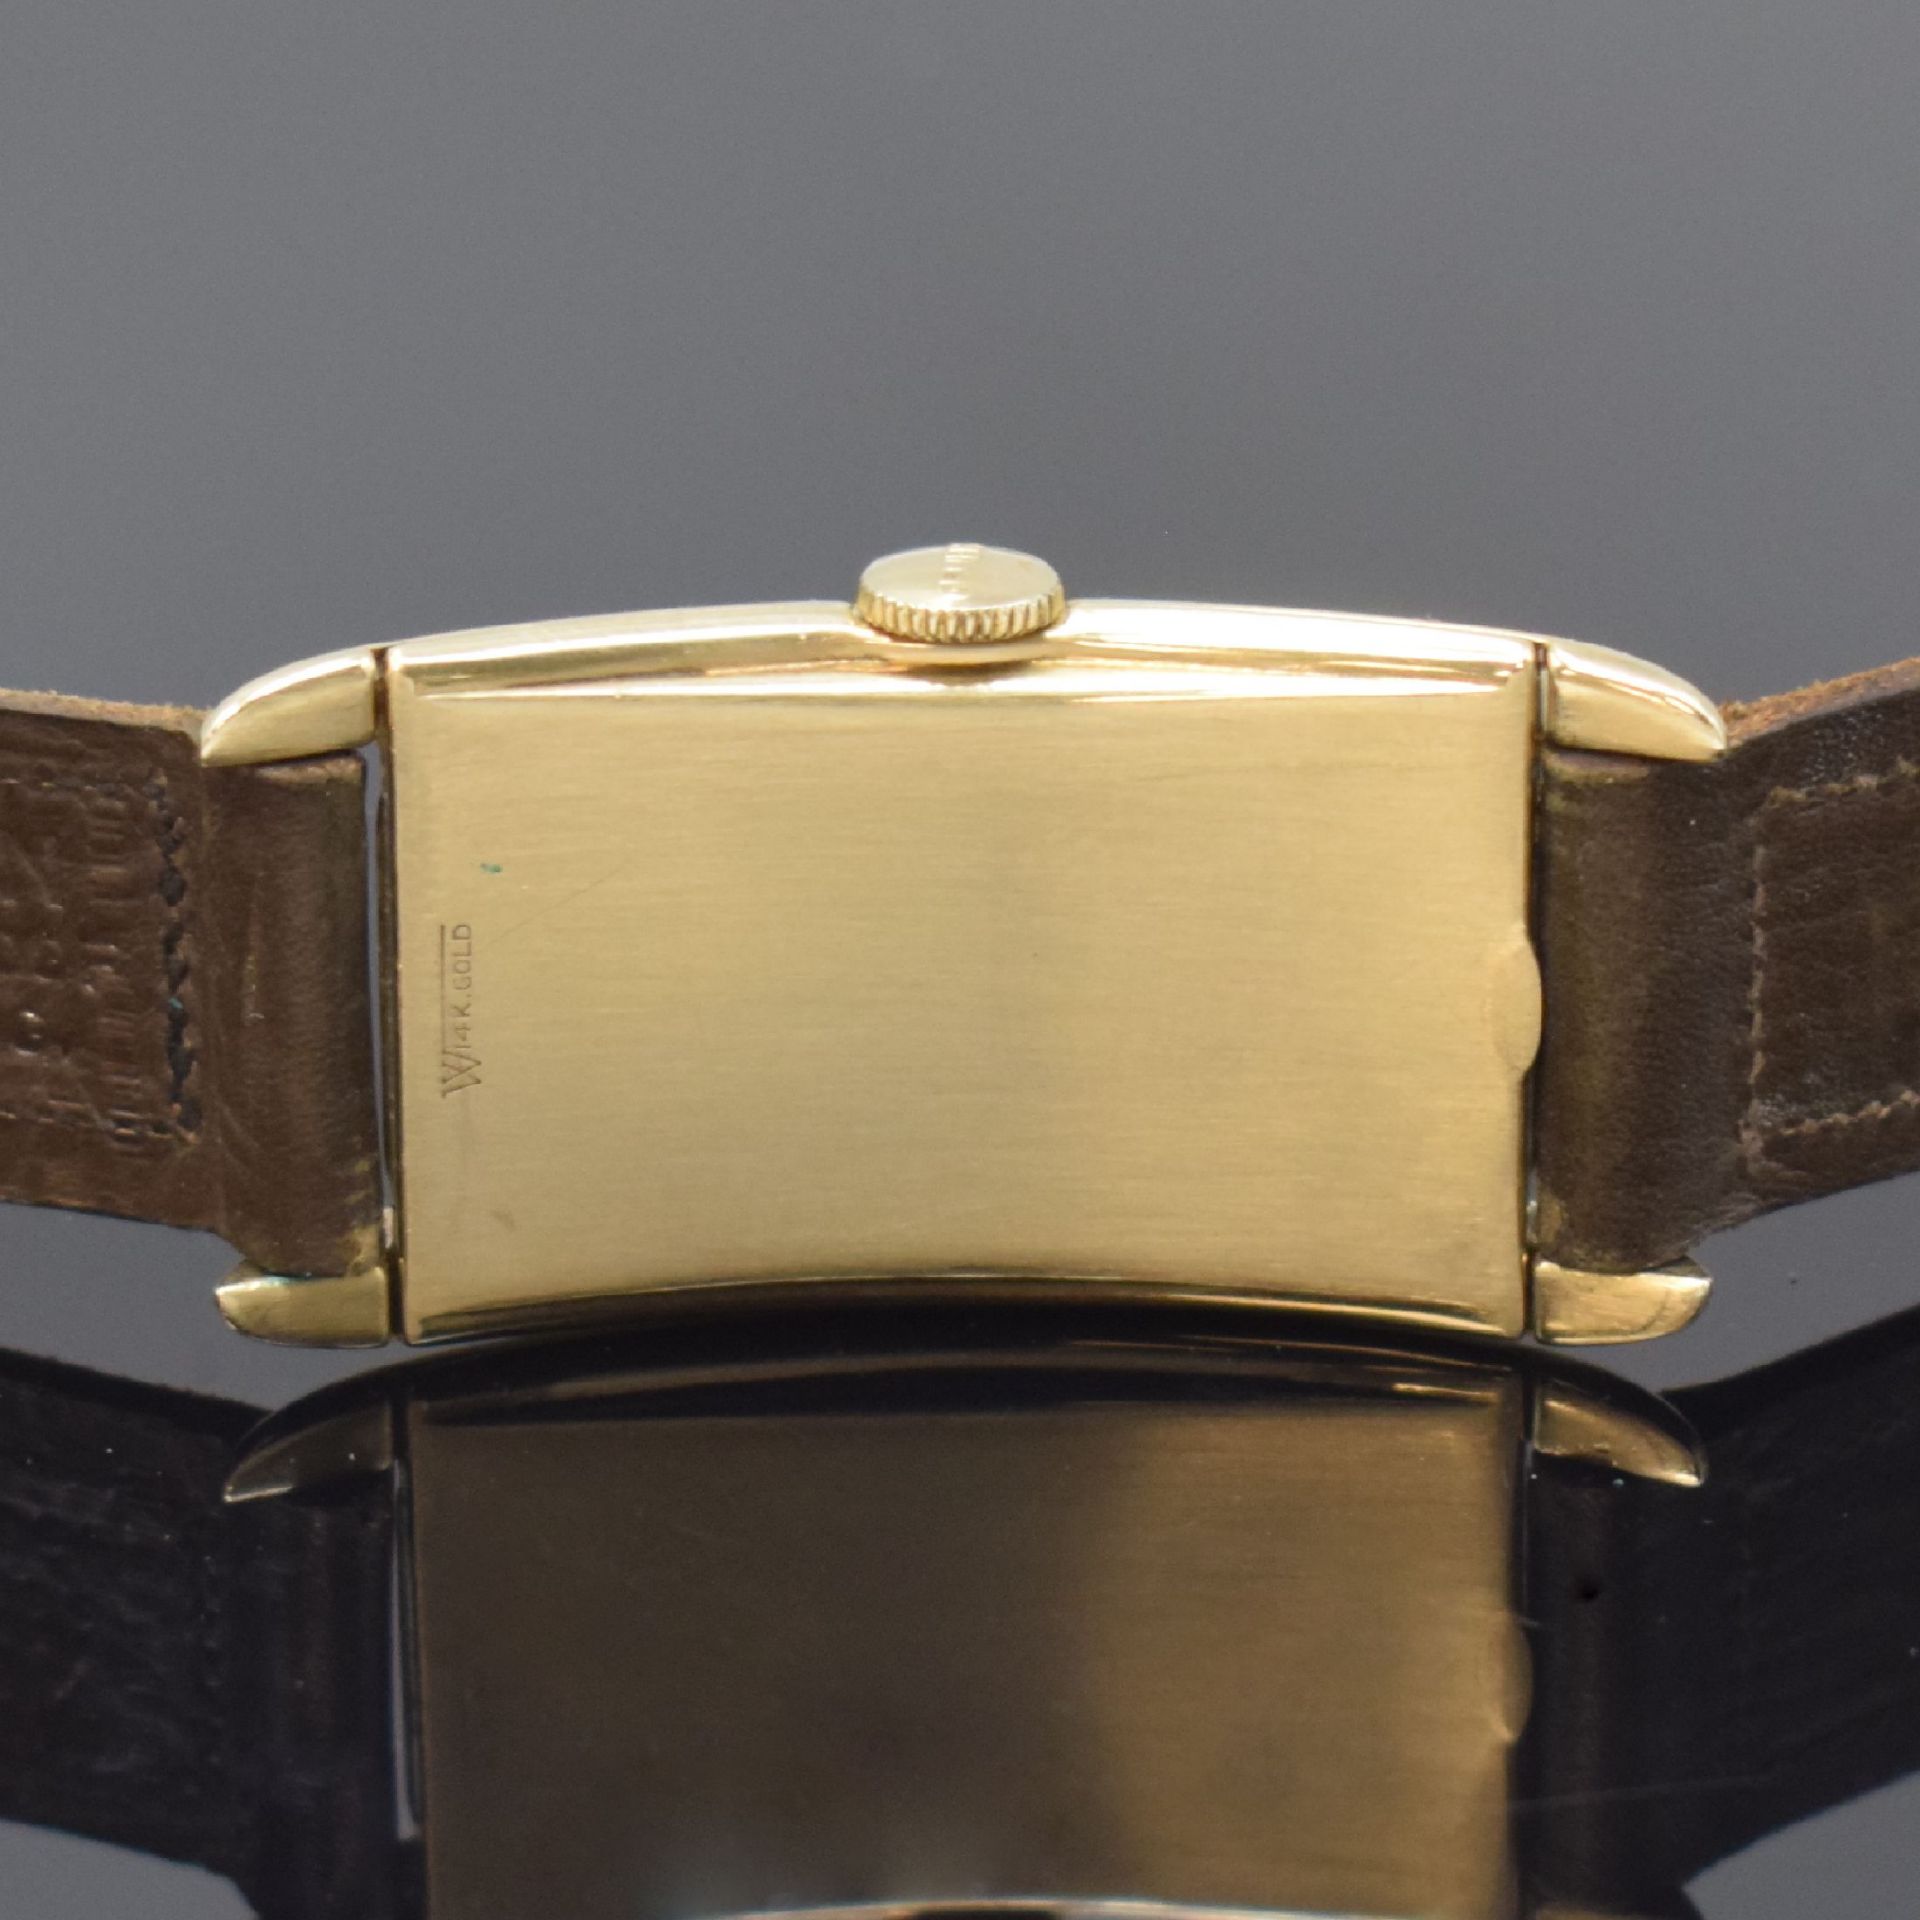 GRUEN Precision rechteckige Armbanduhr in 14k Gelbgold, - Bild 4 aus 6